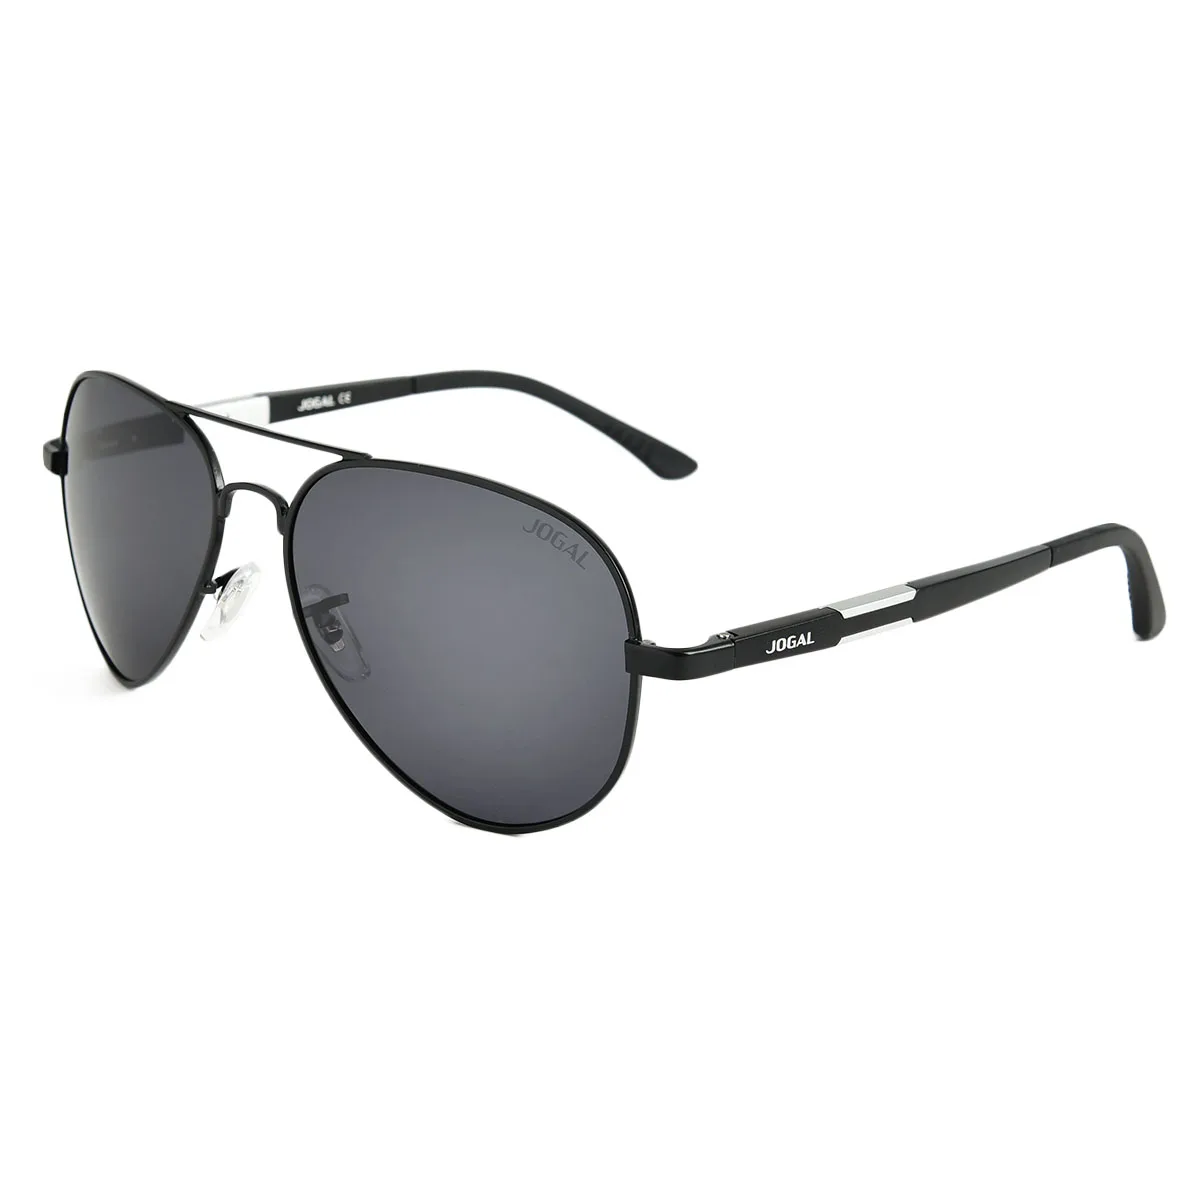 

Jangoul Unisex Summer Sunglasses For Men Women Polarized Vintage Frame Luxury Brand Design Multiple Styles Driving Beach UV400